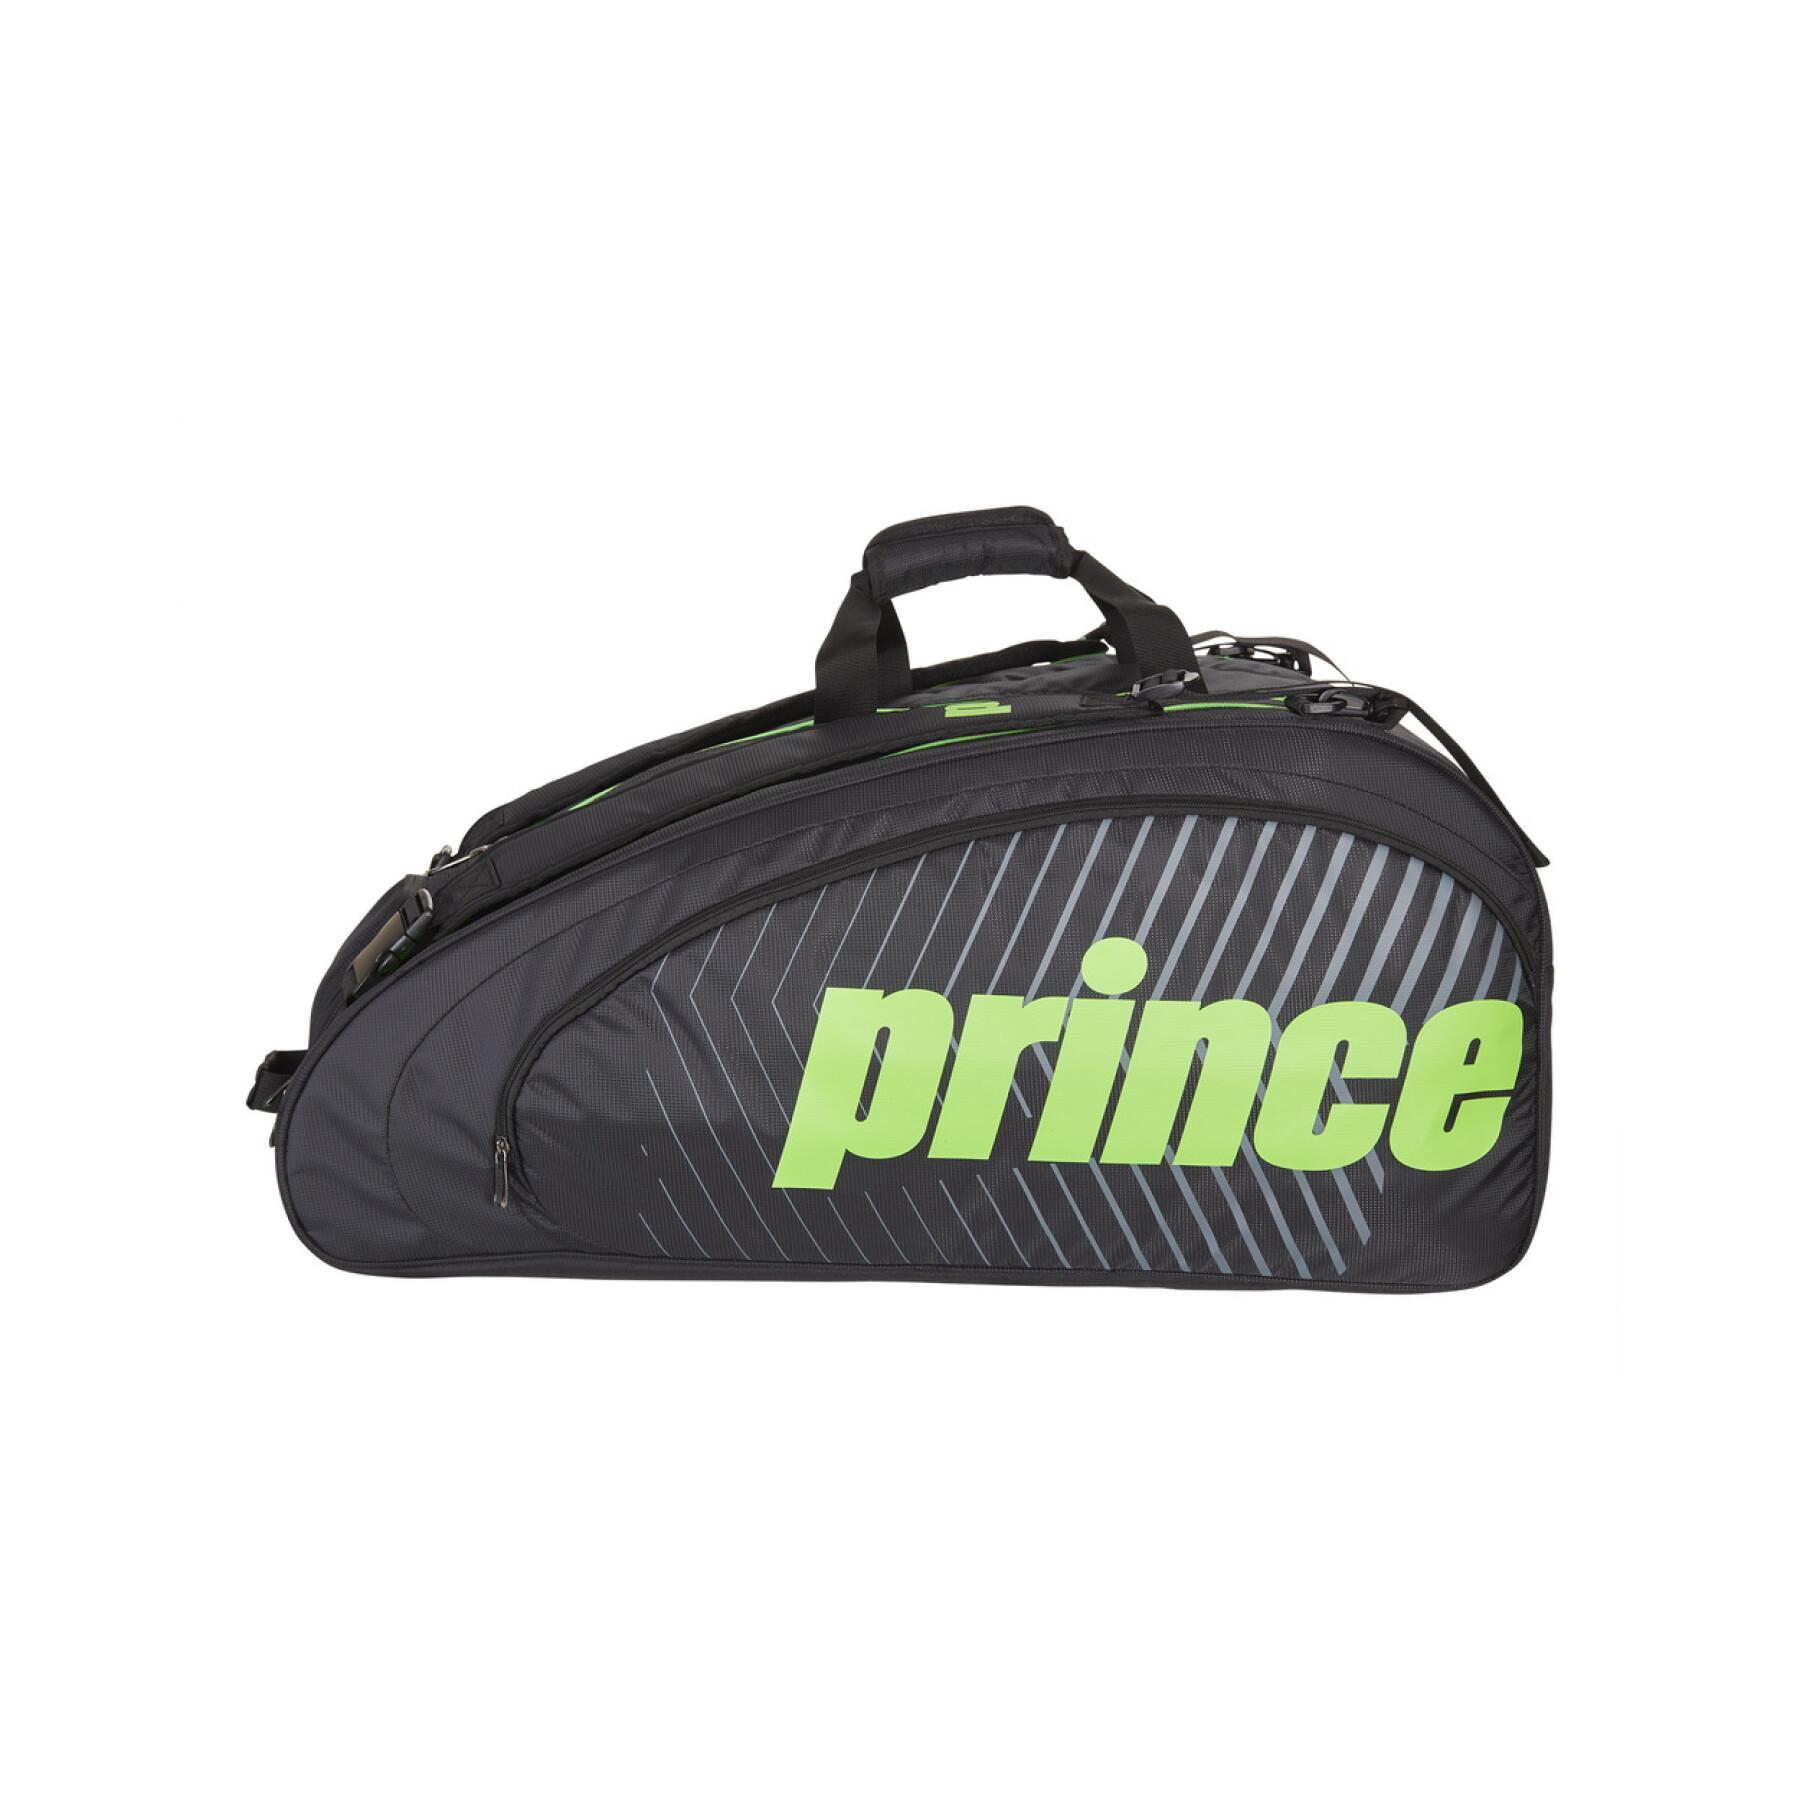 Tennis racket bag Prince Tour Challenger